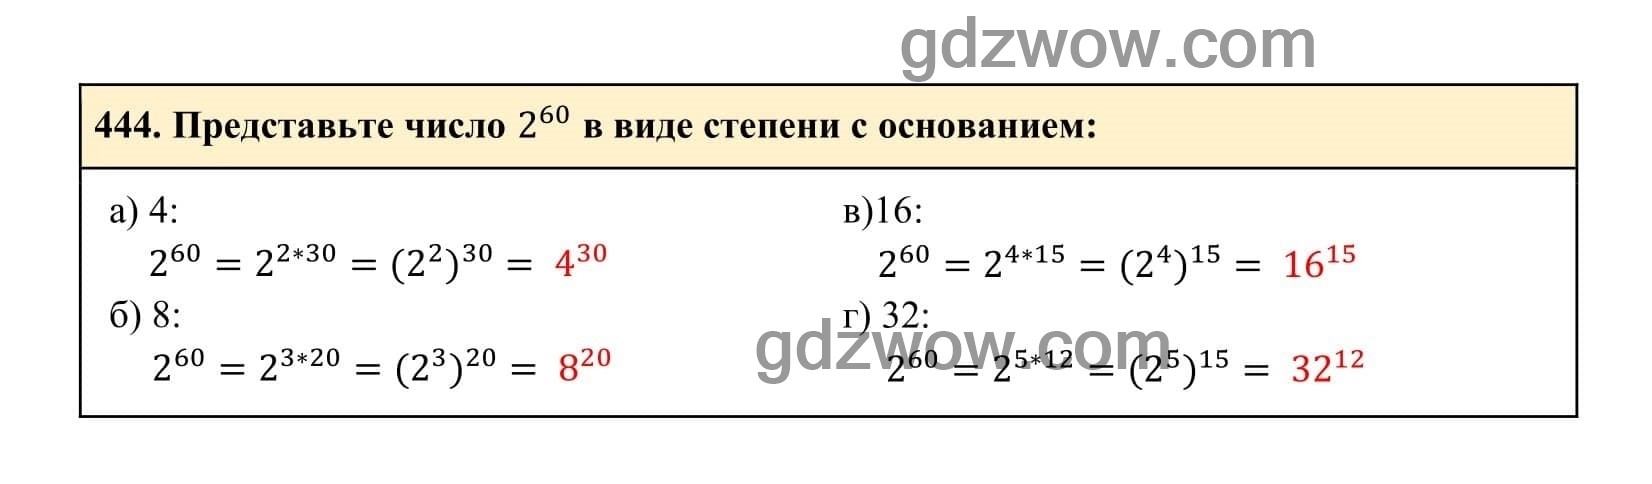 Упражнение 444 - ГДЗ по Алгебре 7 класс Учебник Макарычев (решебник) - GDZwow